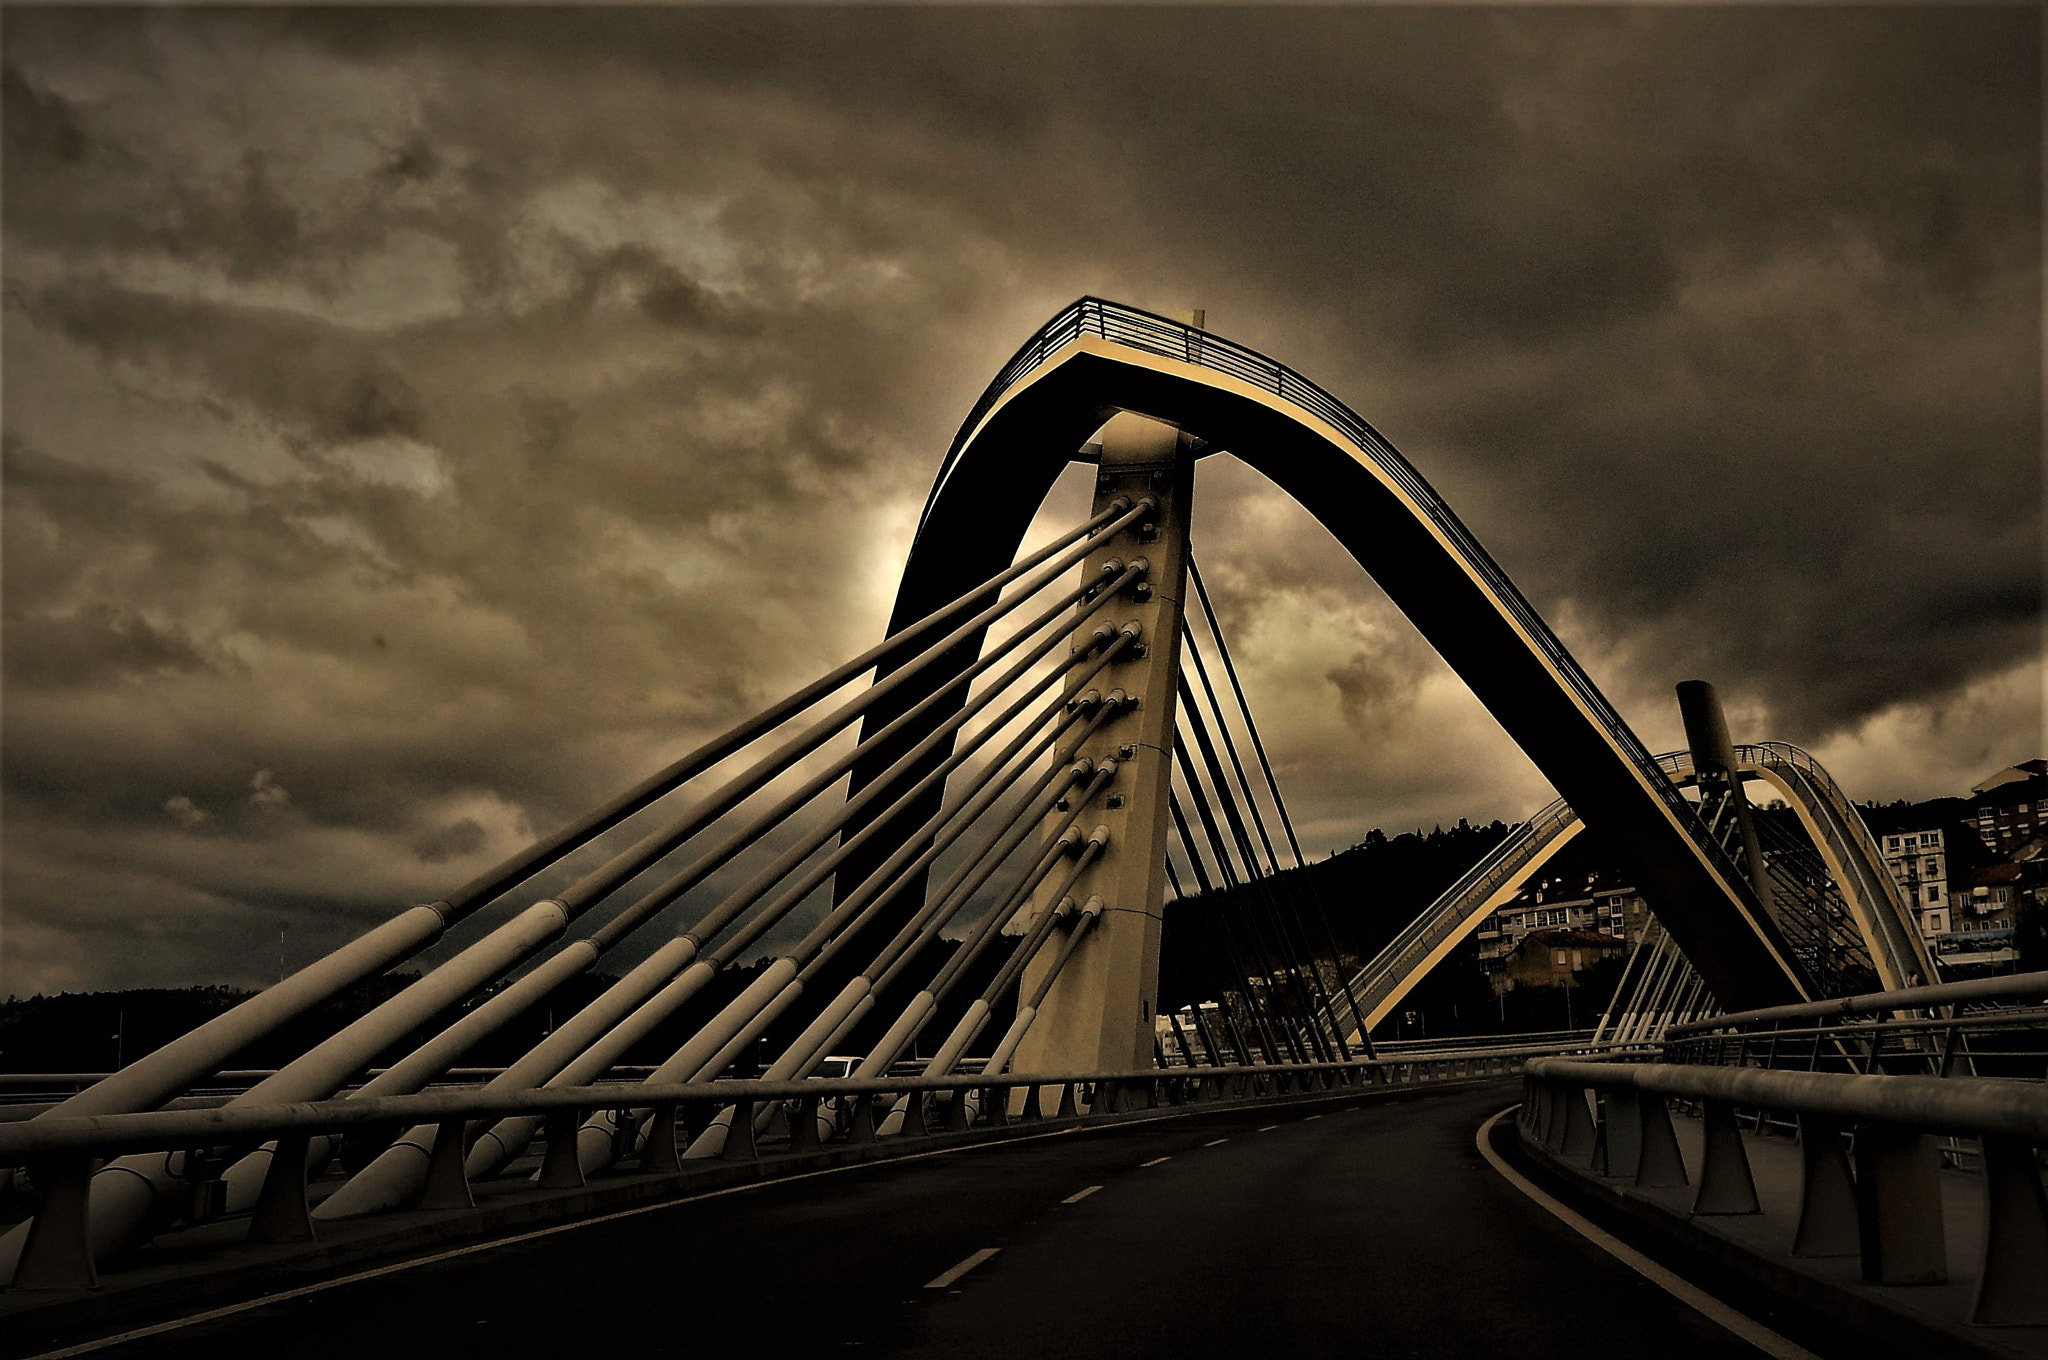 Nikon D90 sample photo. A bridge over the river / a pont sur la riviere photography